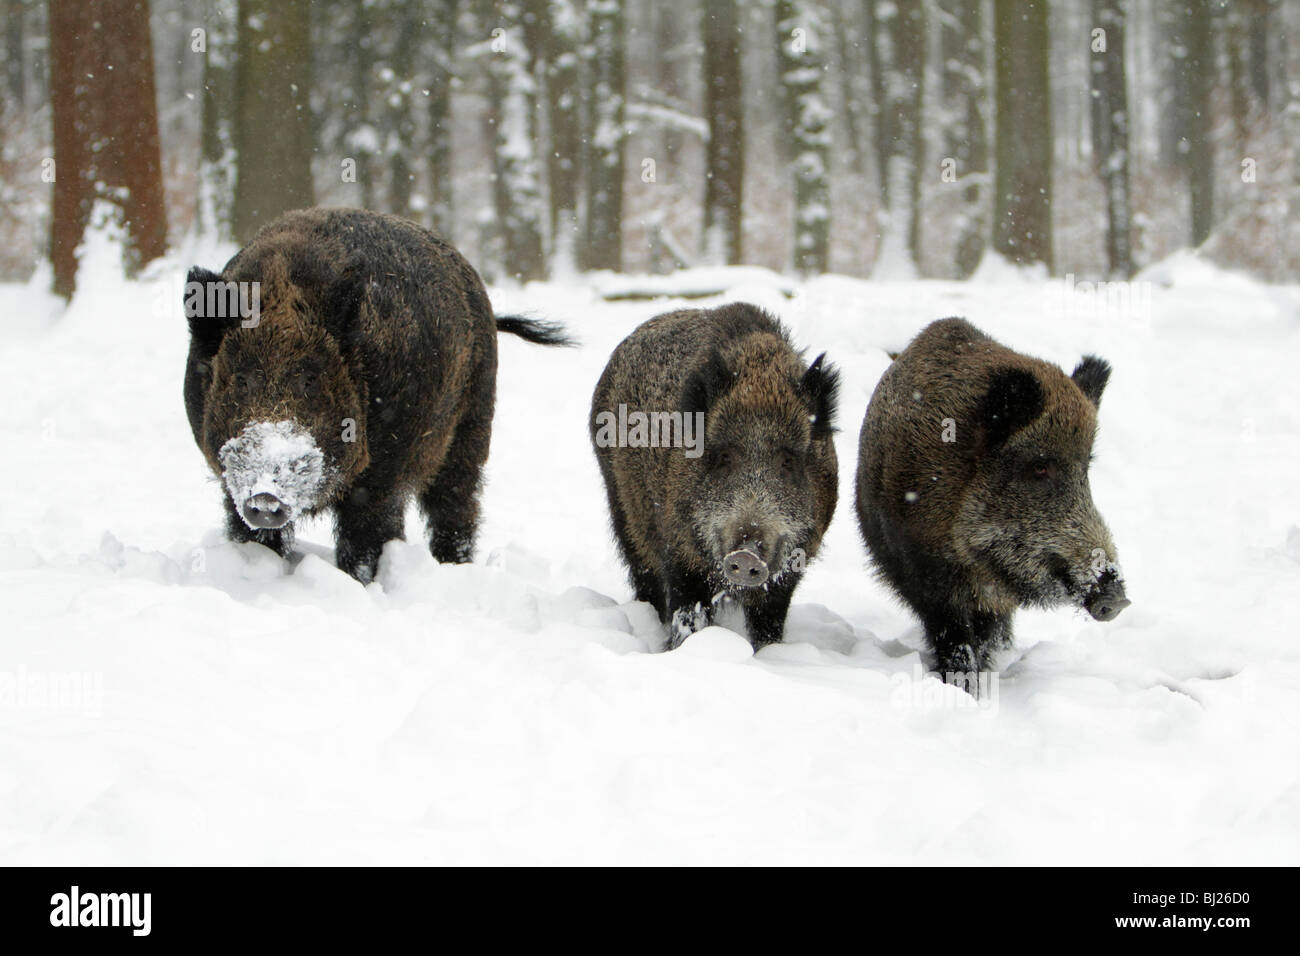 Sanglier, Sus Scrofa, le sanglier et deux truies dans la forêt couverte de neige, Allemagne Banque D'Images